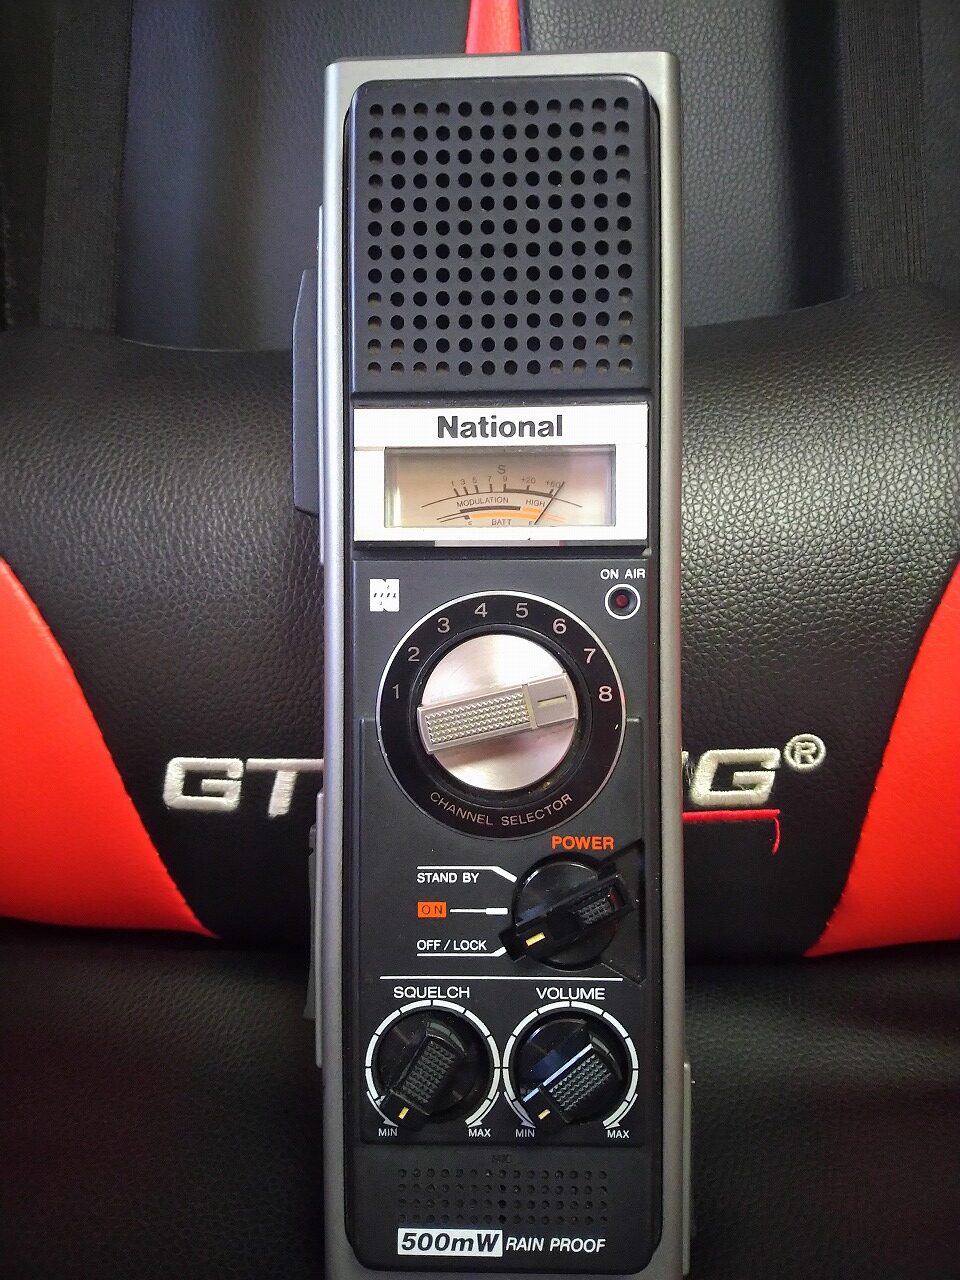 市民ラジオ RJ-480D - アマチュア無線